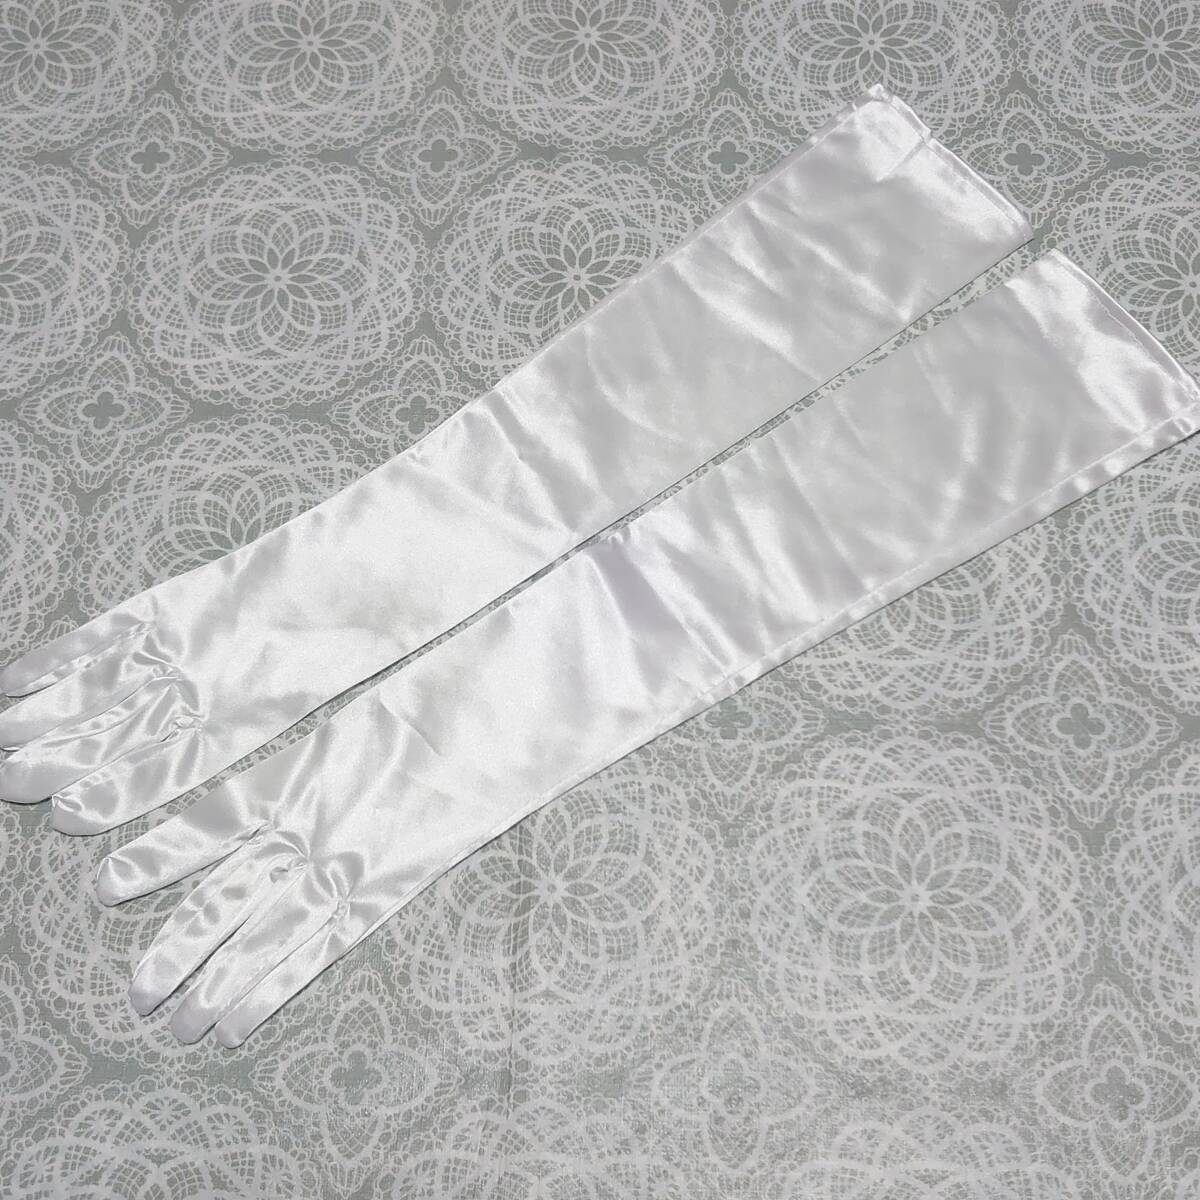  gloves * long glove * approximately 54cm* white * lustre * wedding * formal /1048